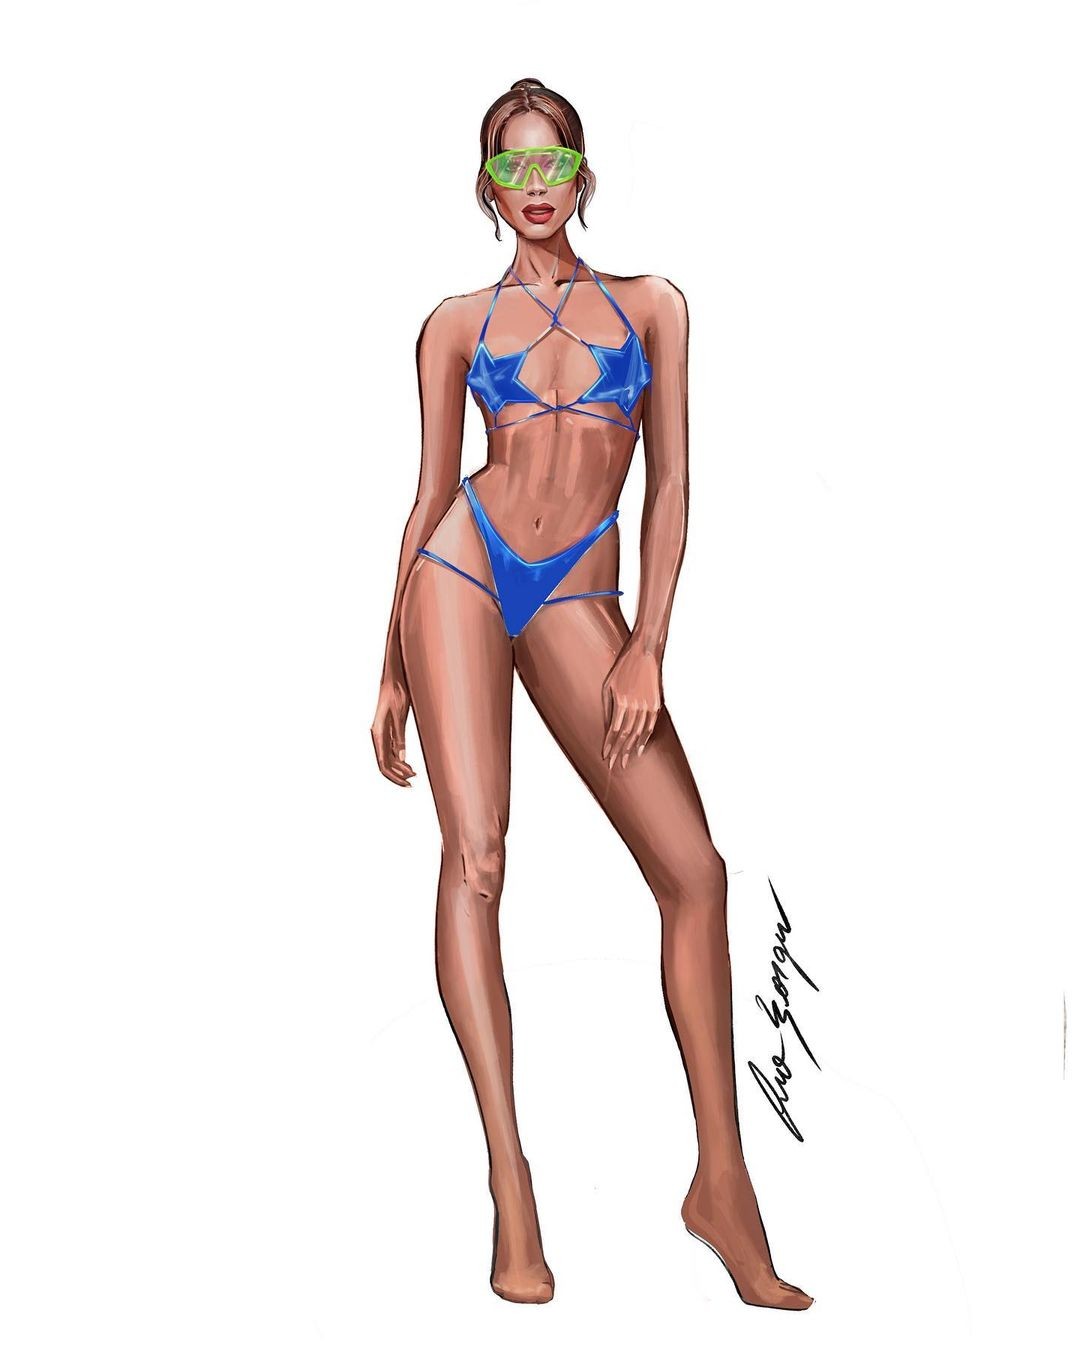 Croquis mostram looks de Anitta em "Girl From Rio" em versão ilustrada.